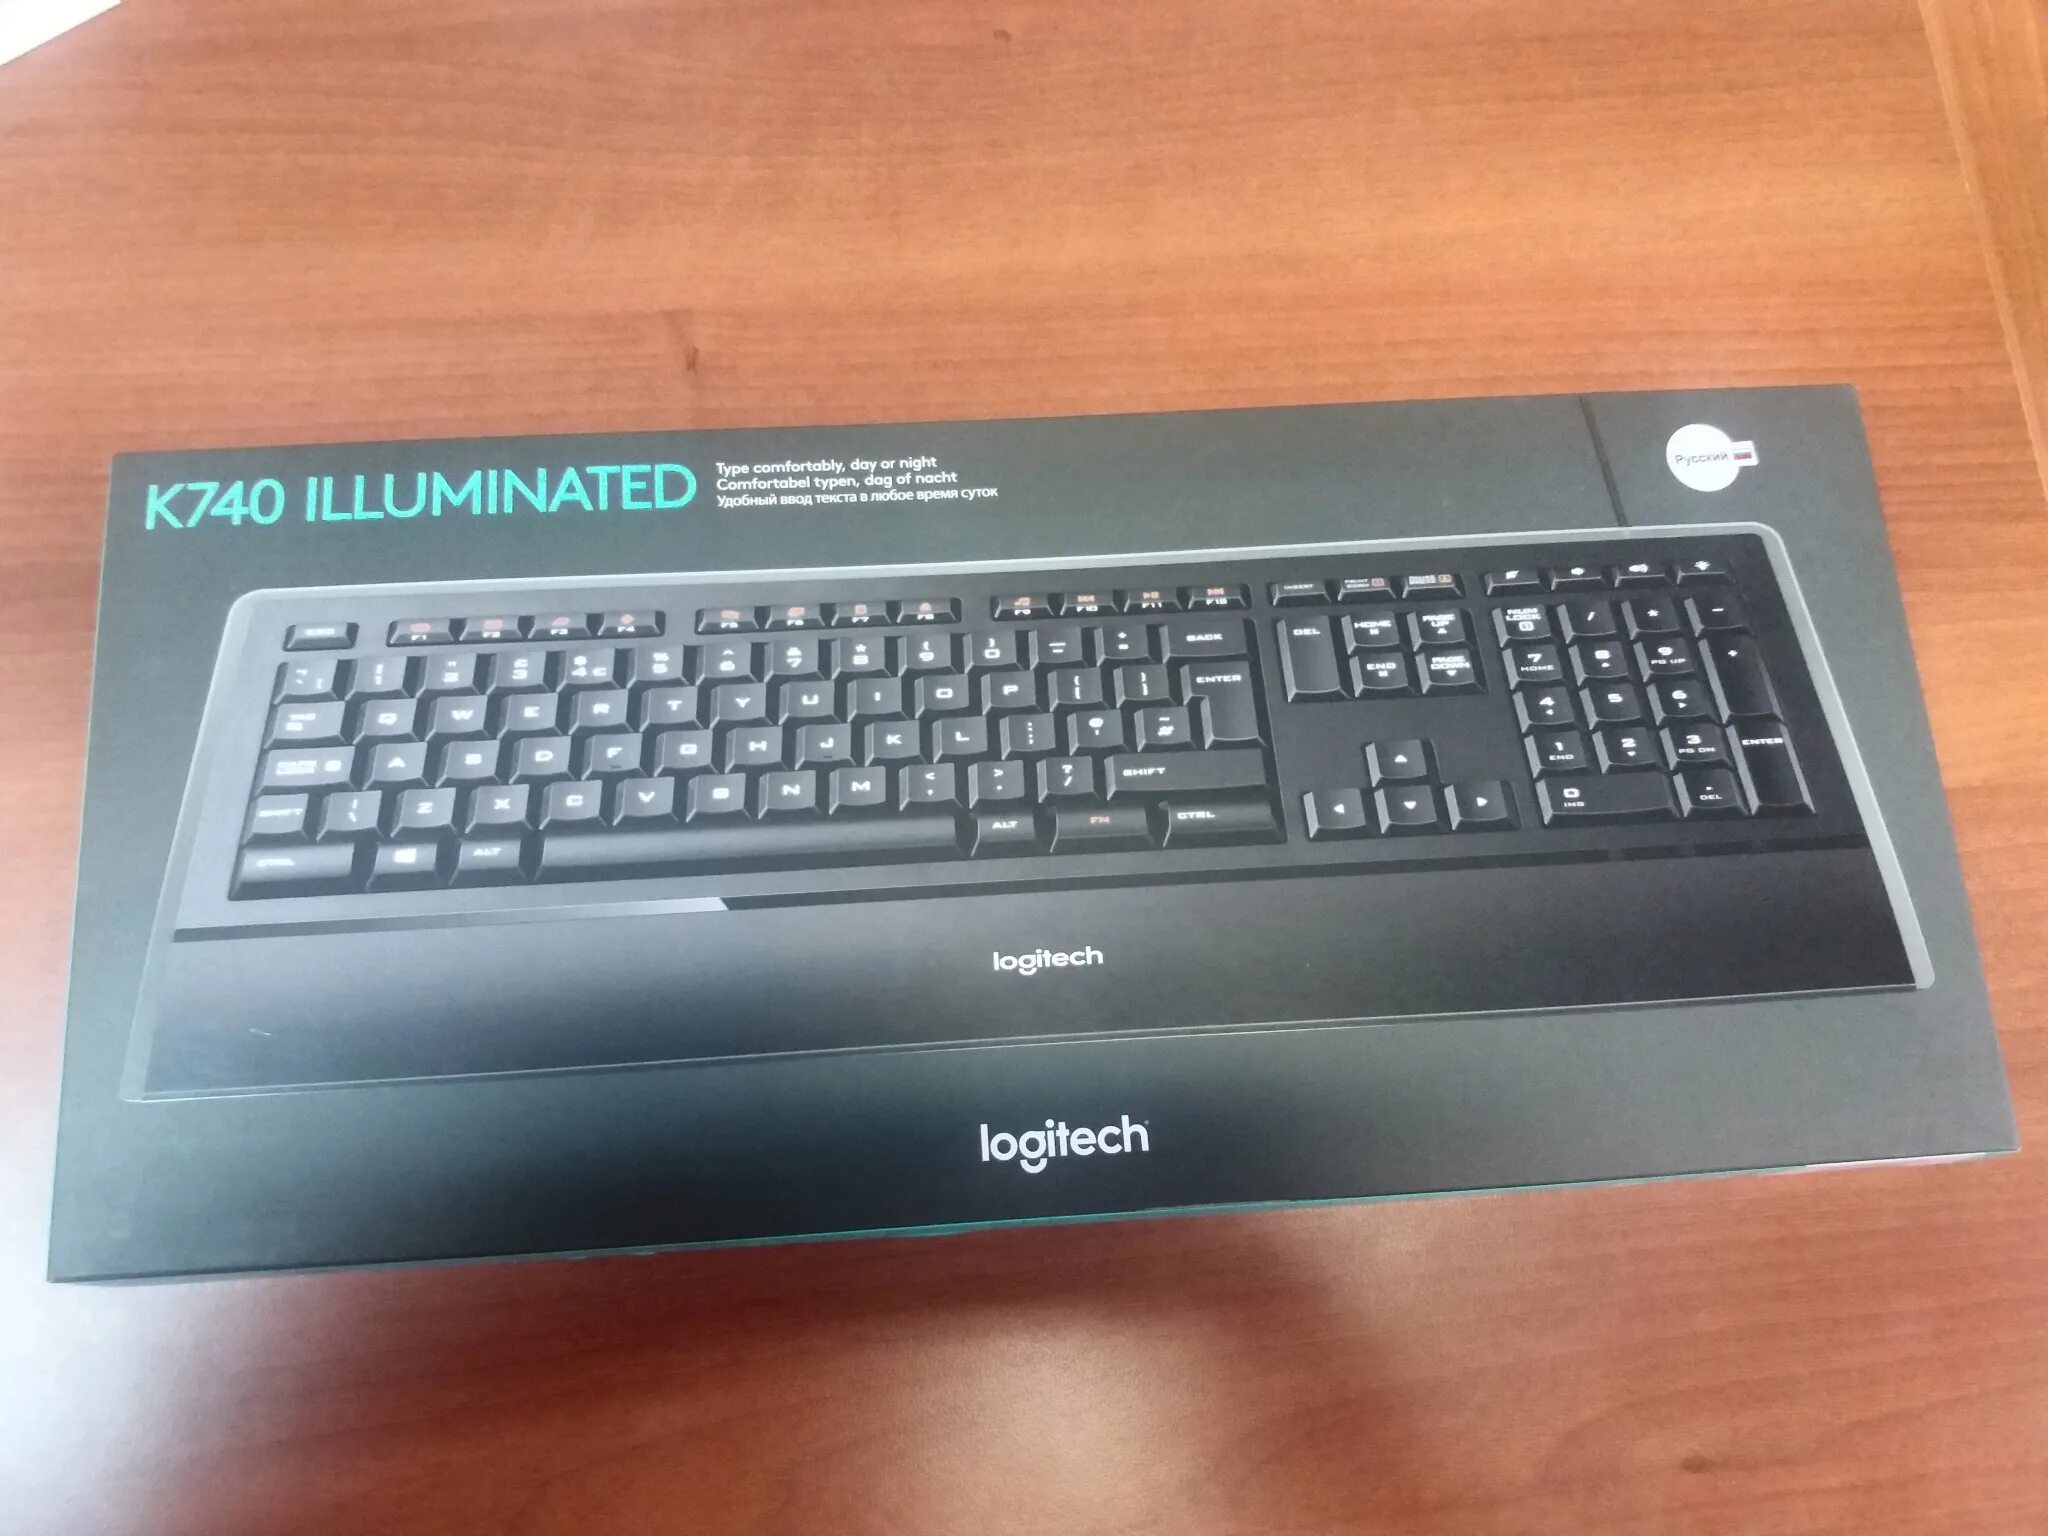 Клавиатура Logitech illuminated Keyboard k740. Logitech k740 illuminated. Клавиатура Logitech illuminated Keyboard k740 Black USB. Клавиатура Logitech k740 illuminated Keyboard Black.